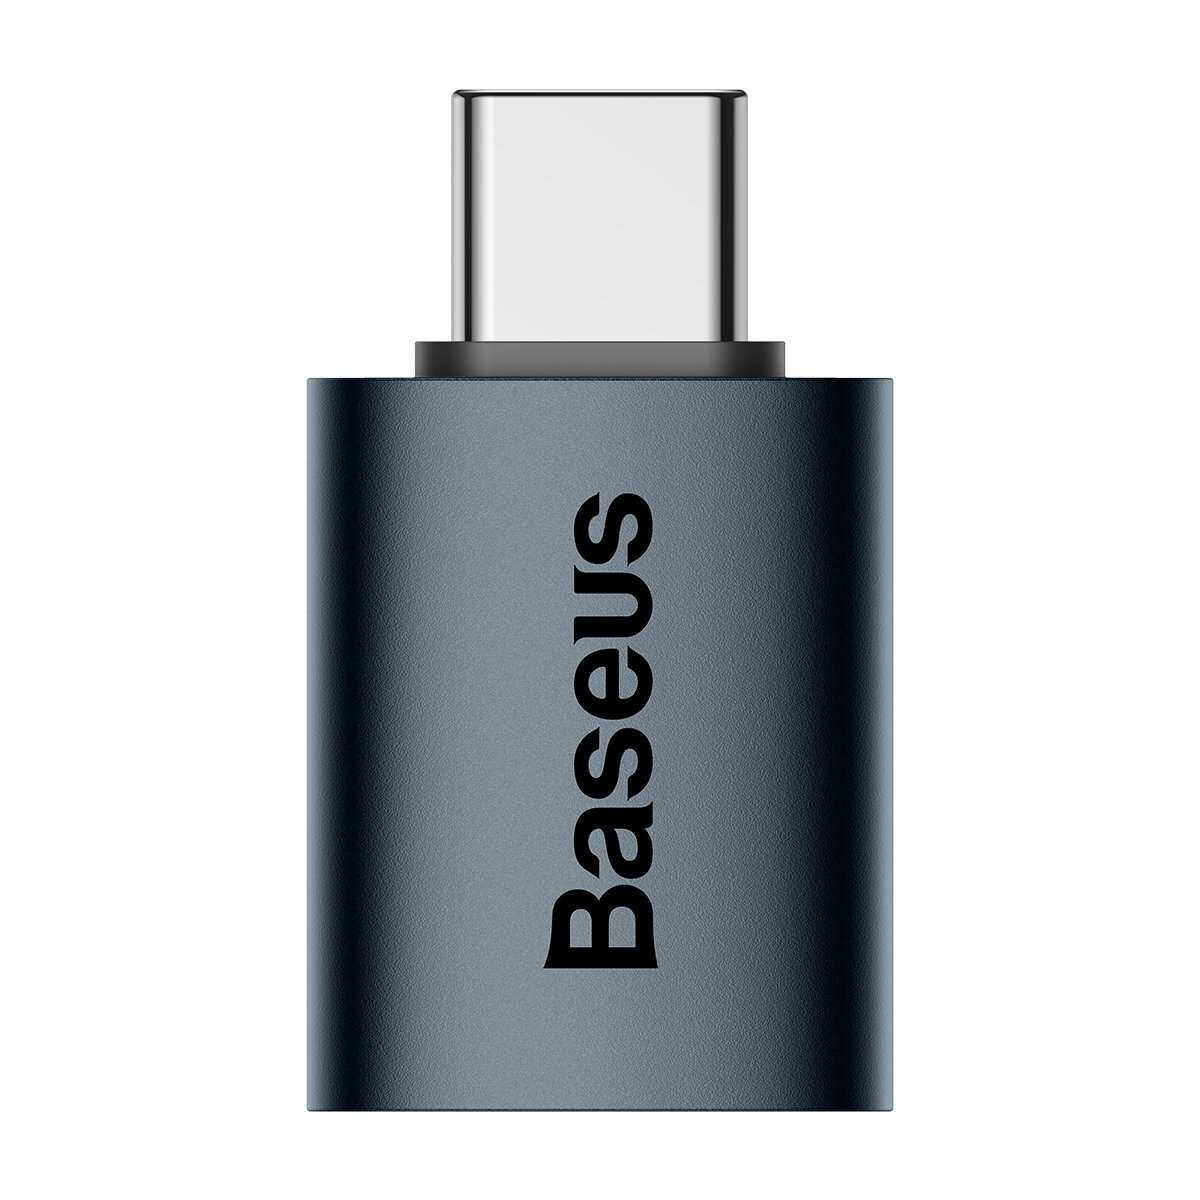 Kép 2/11 - Baseus Ingenuity Mini USB-C USB-A átalakító 3.1, kék (ZJJQ000003)